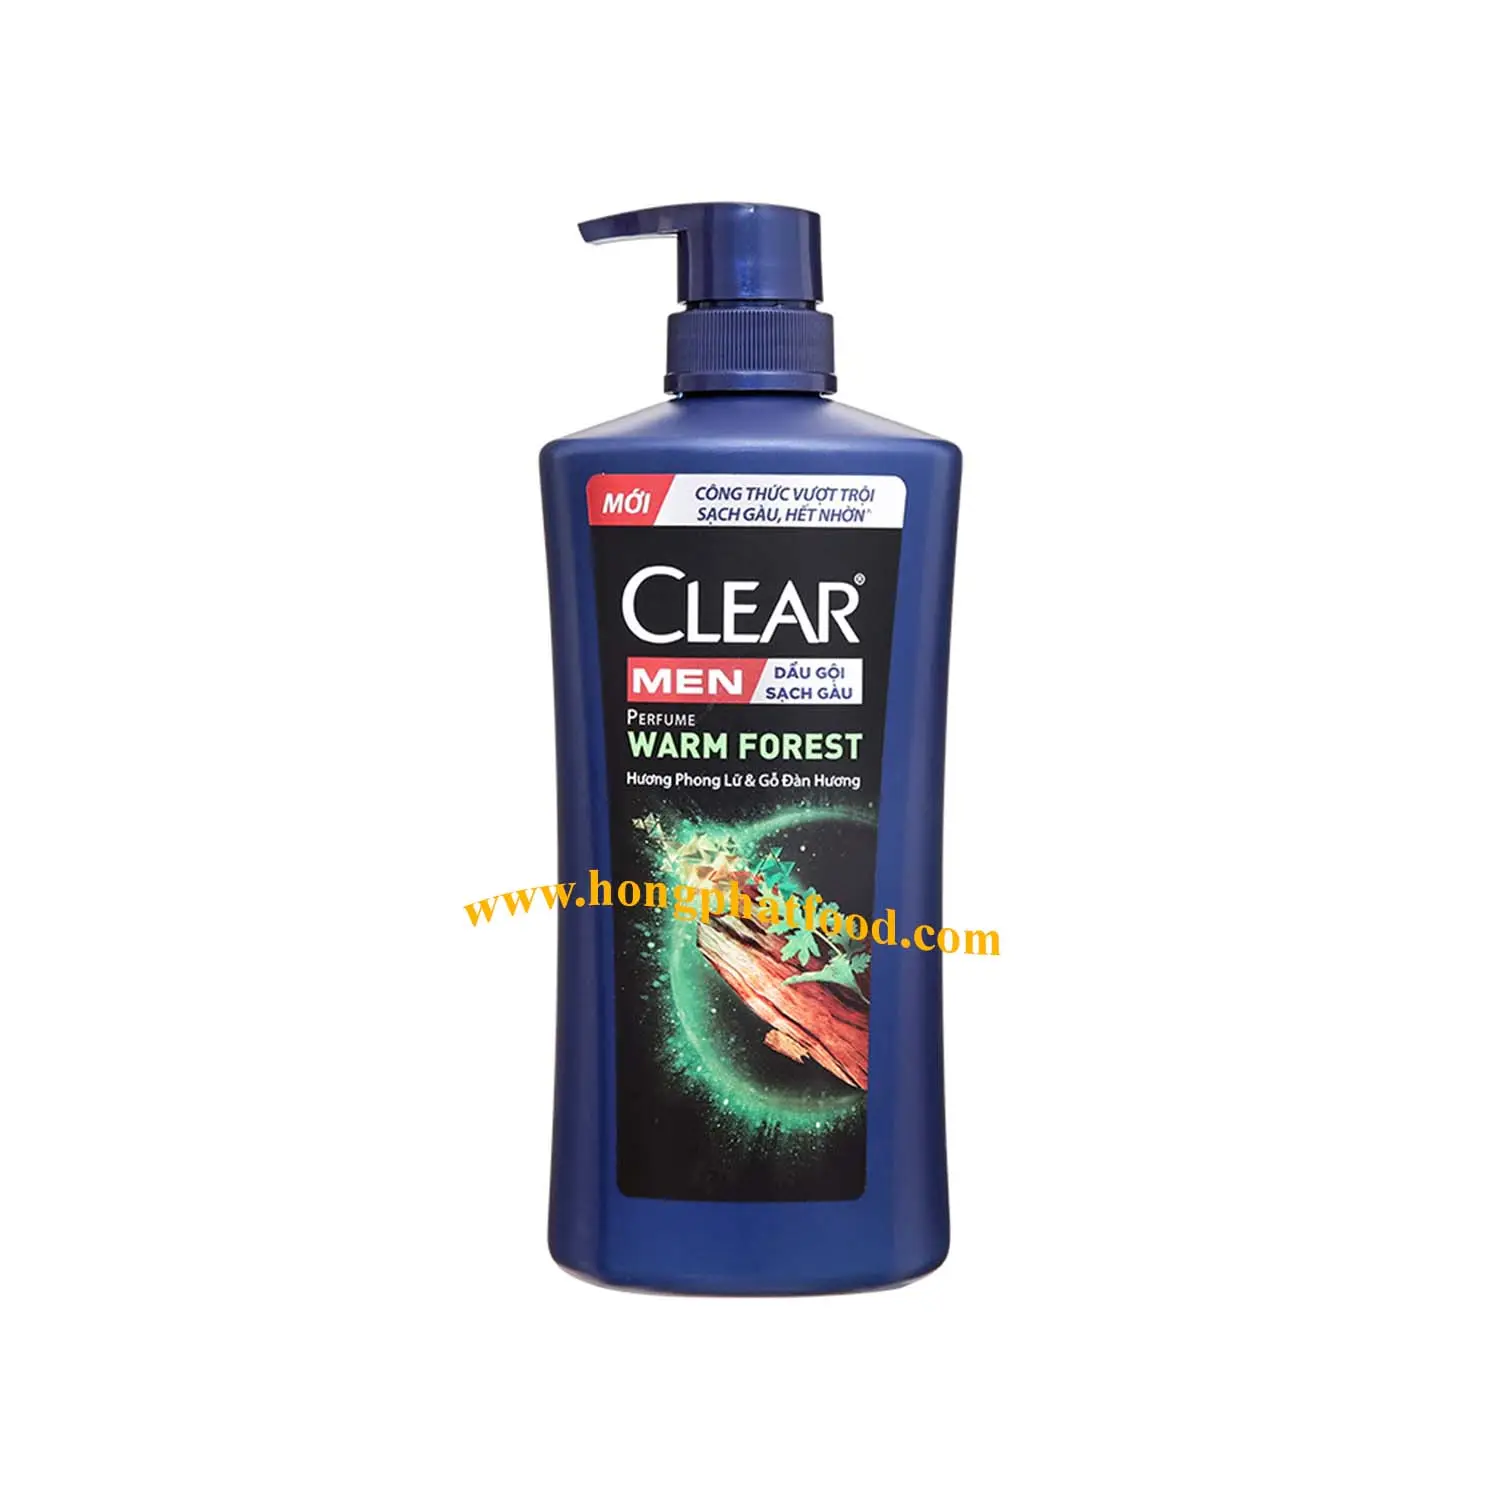 プレミアム品質のメンズシャンプー & コンディショナー-Clearr Men Shampoo 600g (Warm Forest) -オーガニックヘアケア製品